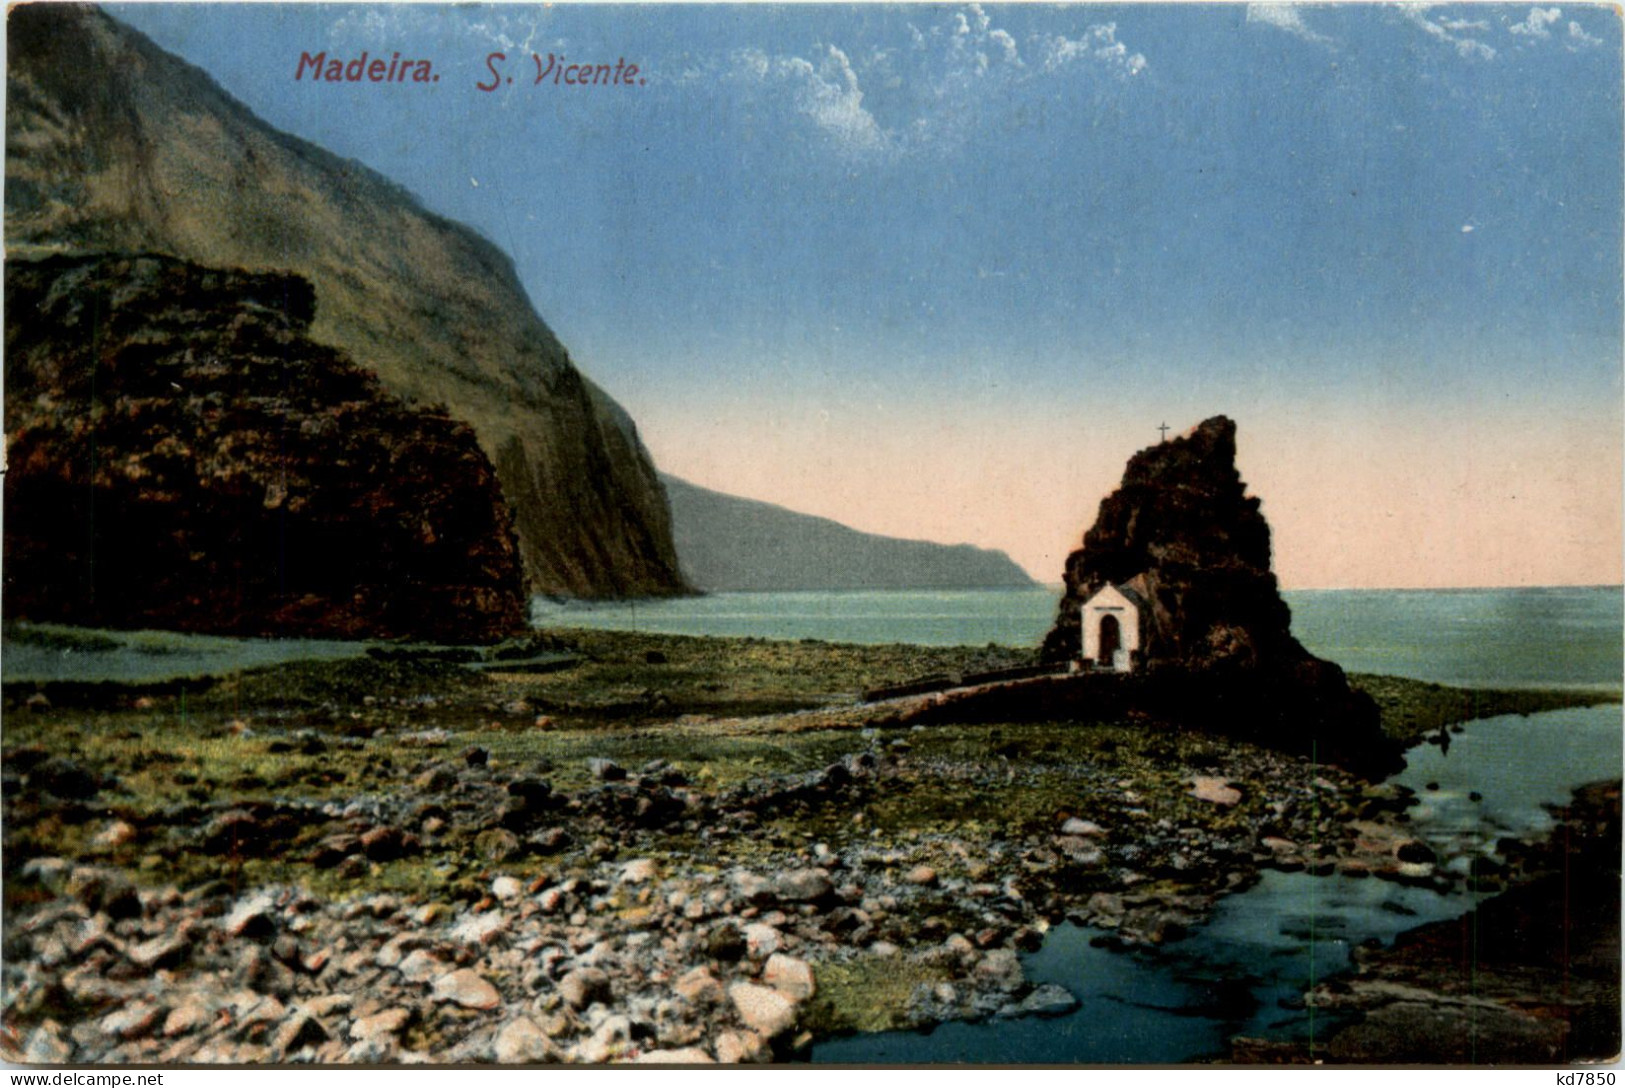 Madeira - S. Vincente - Madeira